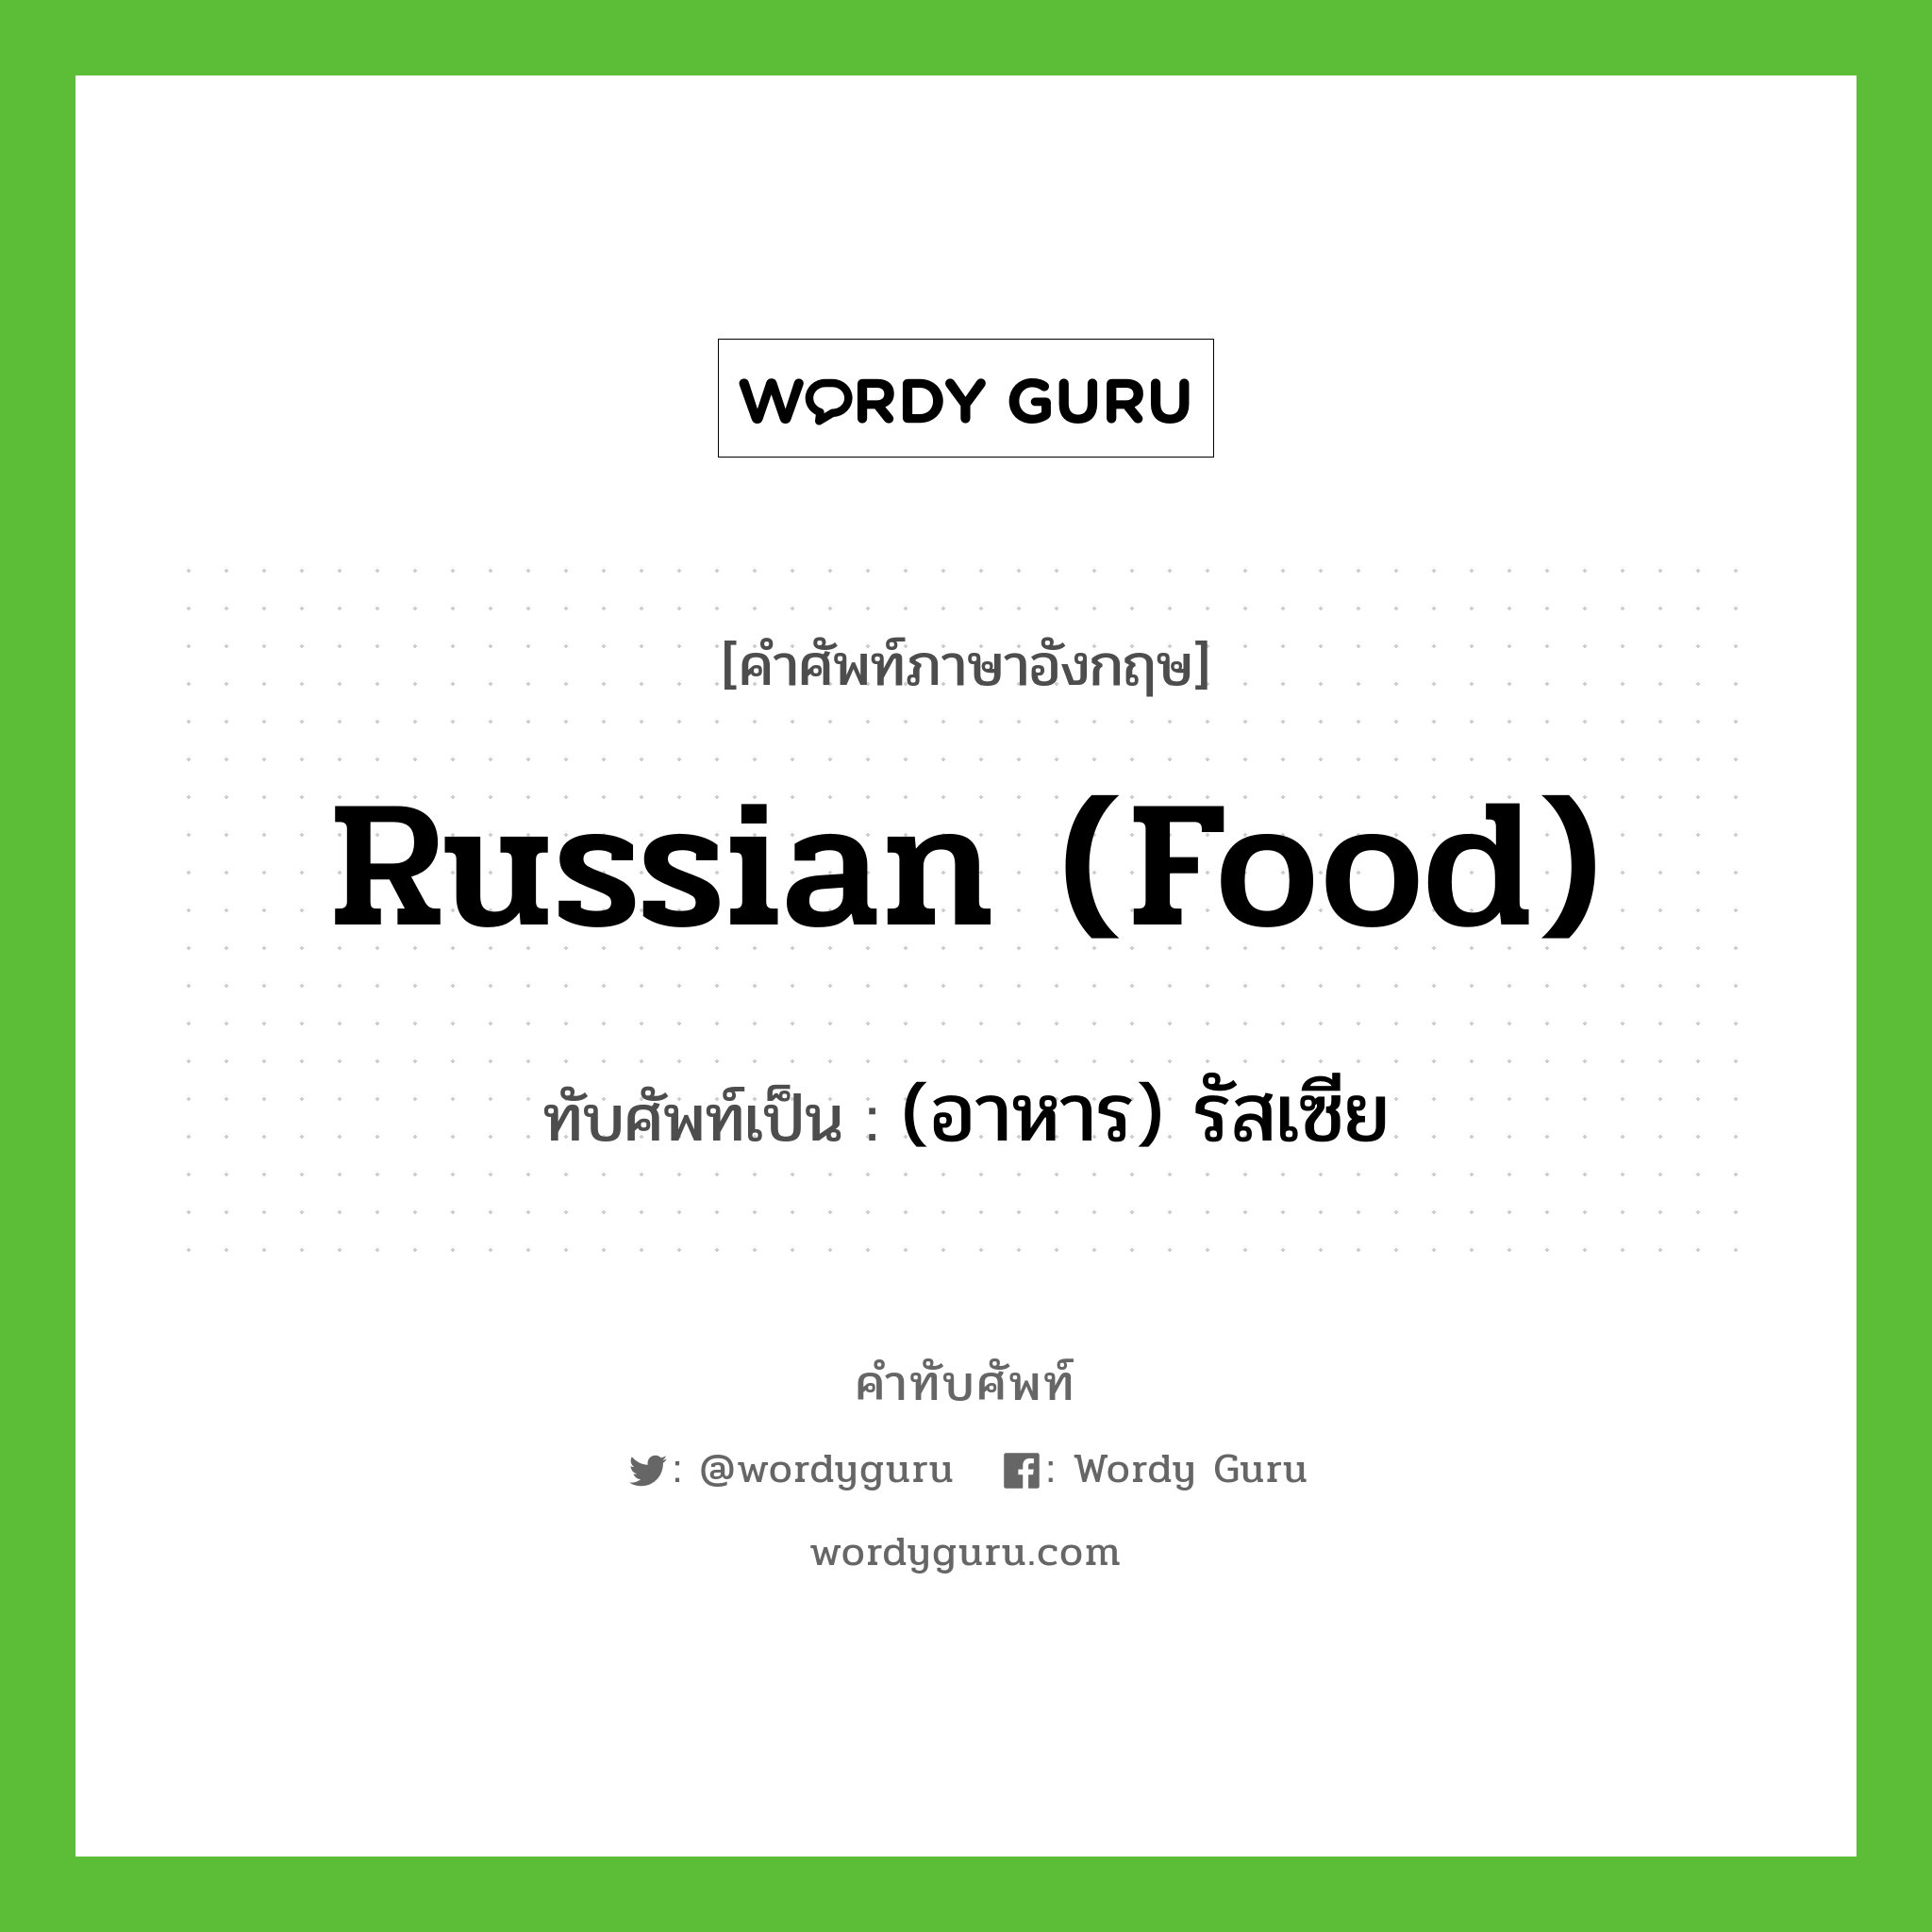 (อาหาร) รัสเซีย เขียนอย่างไร?, คำศัพท์ภาษาอังกฤษ (อาหาร) รัสเซีย ทับศัพท์เป็น Russian (food)